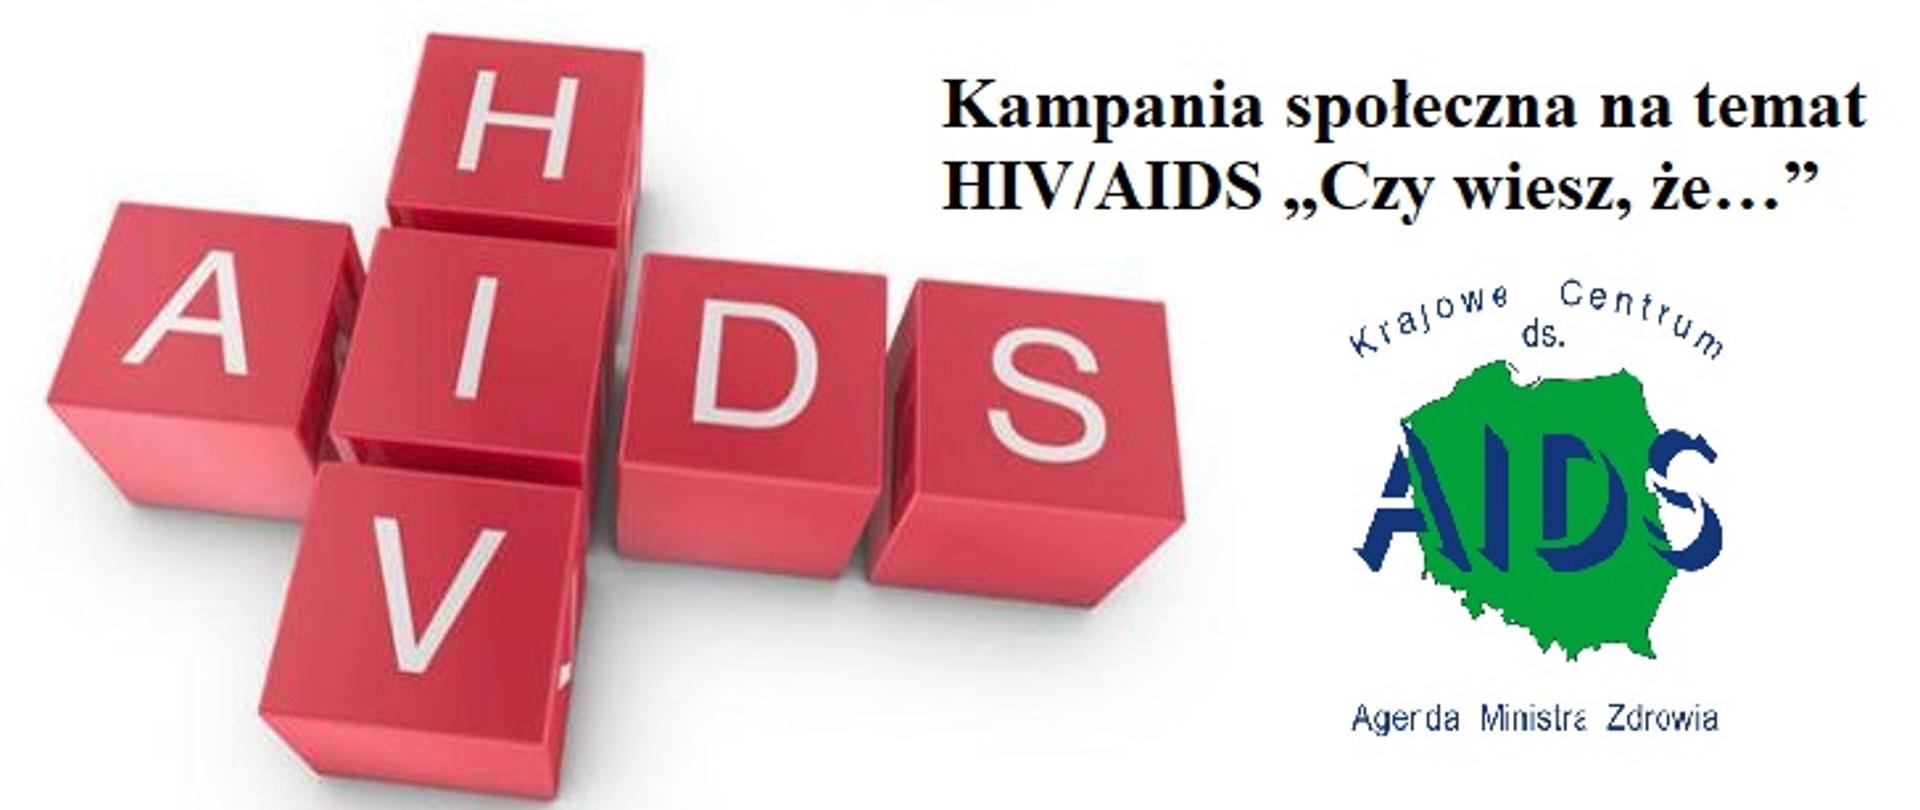 kampania społeczna na temat HIV/AIDS "Czy wiesz, że..."